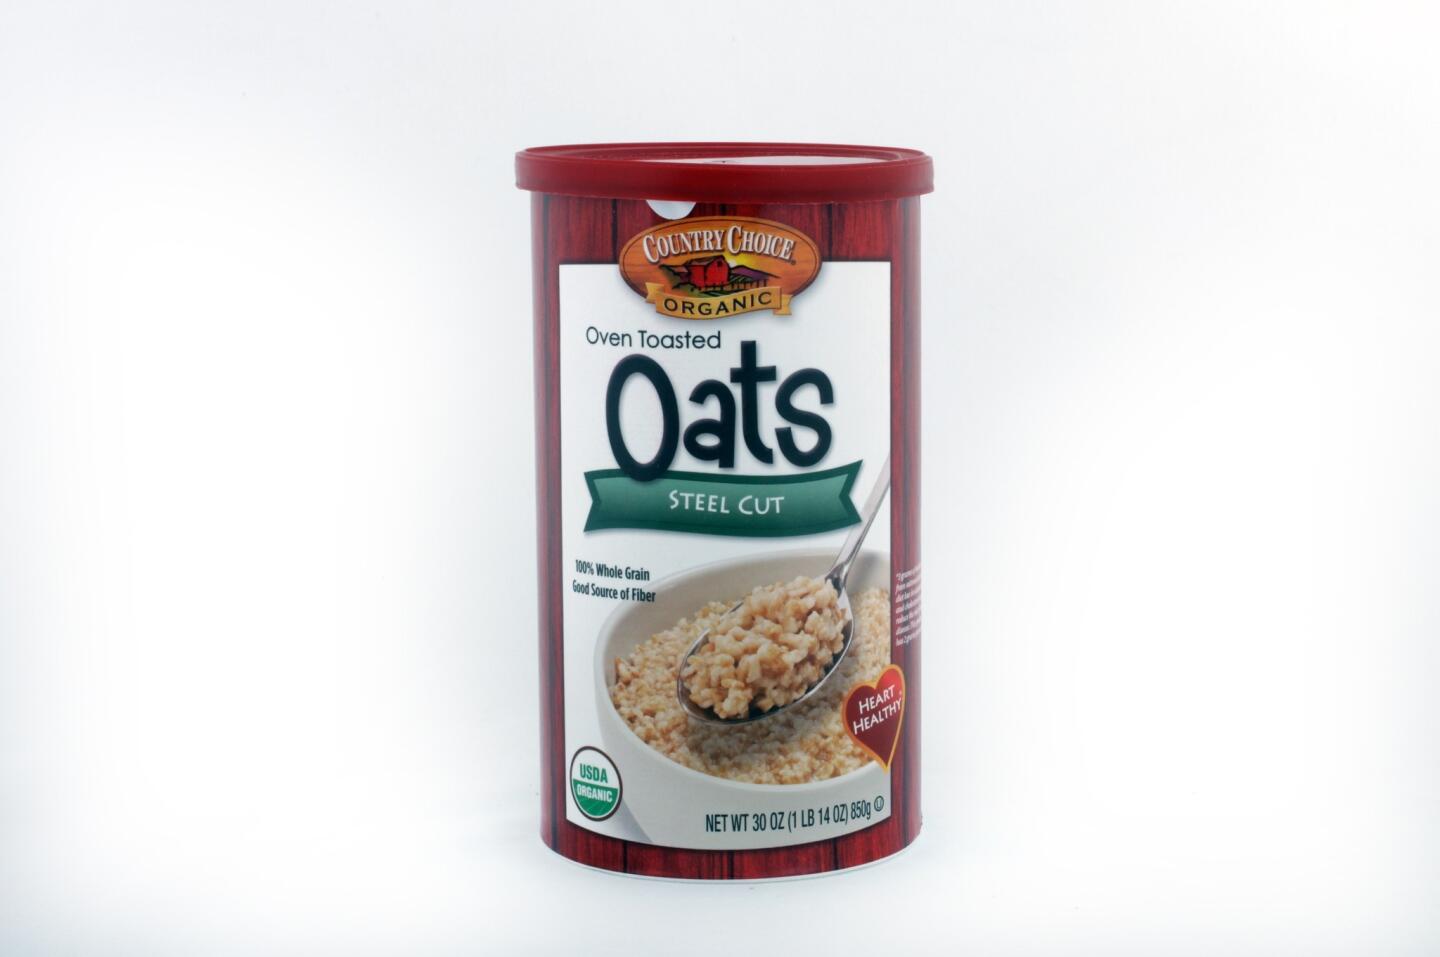 Steel-cut oats